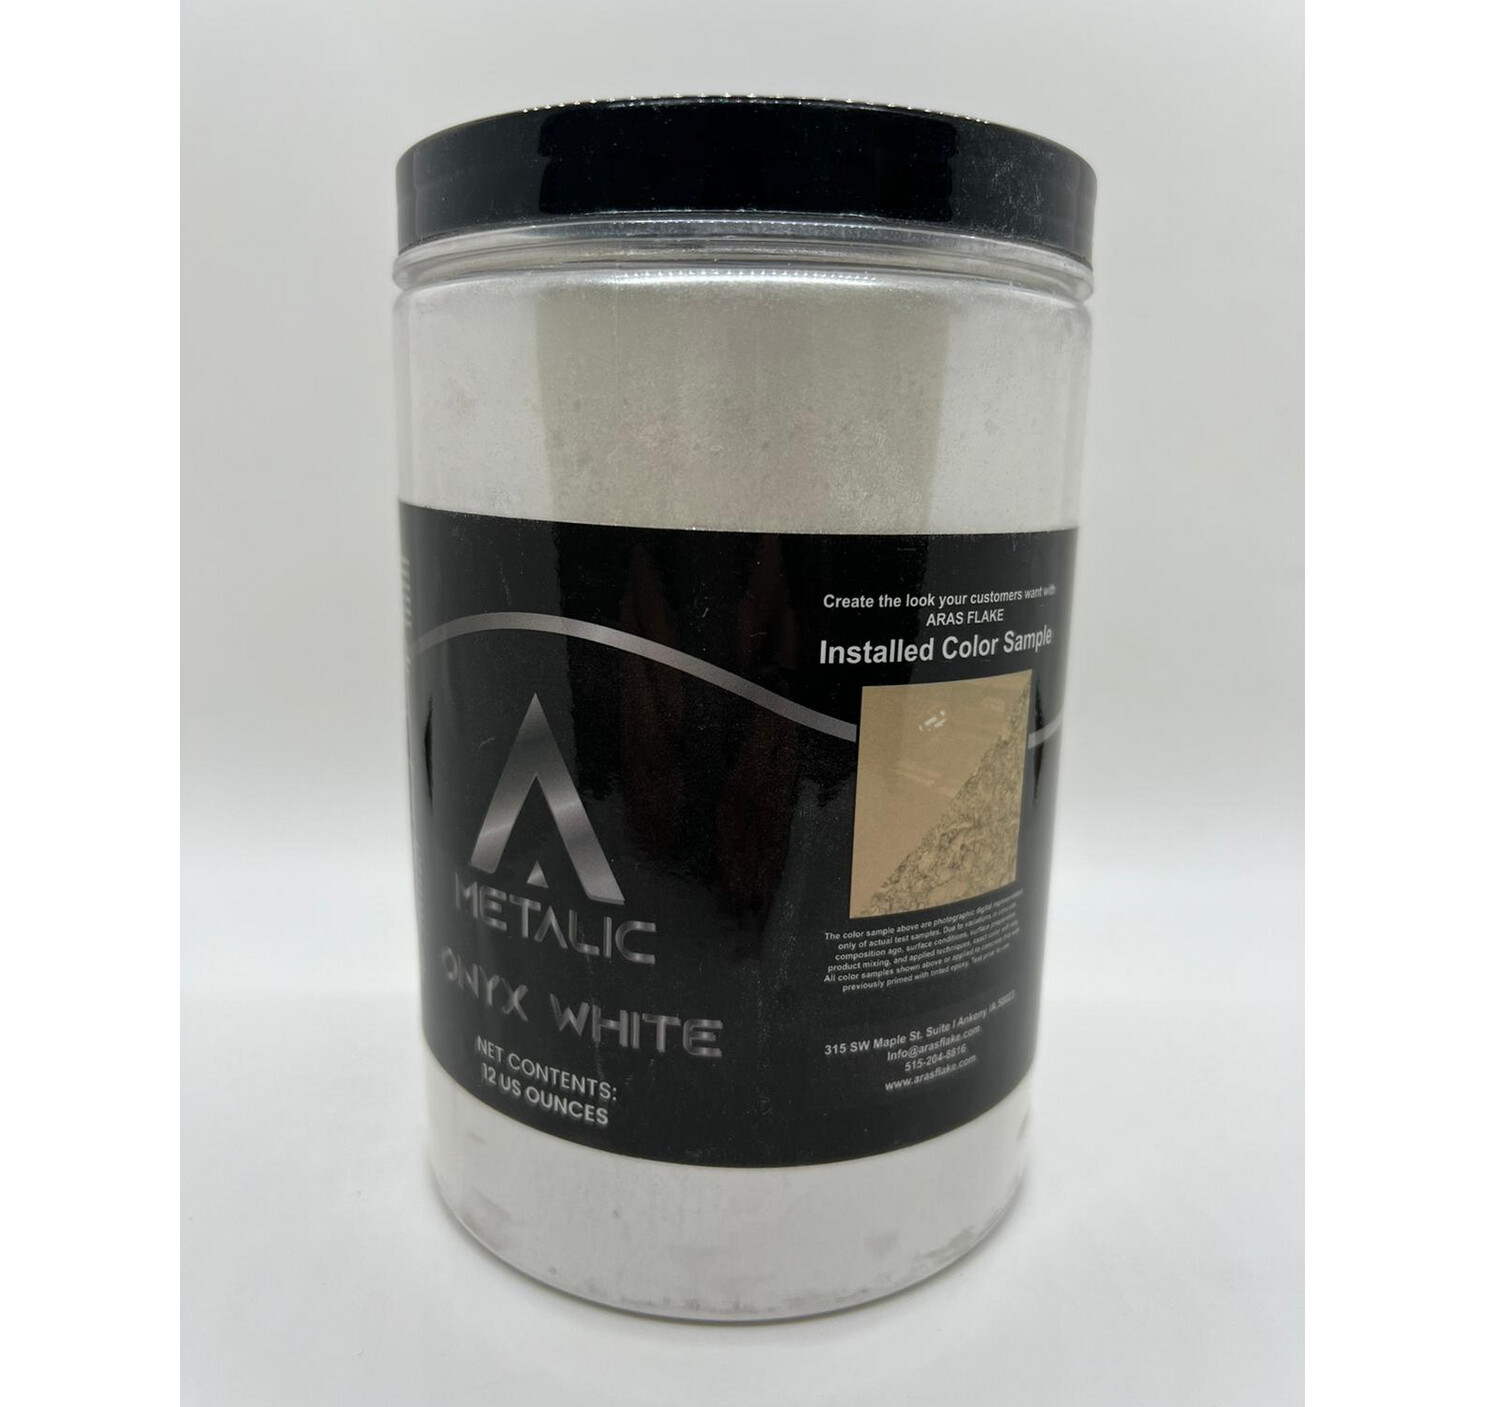 ARAS Metallic Onyx White pigment 12oz